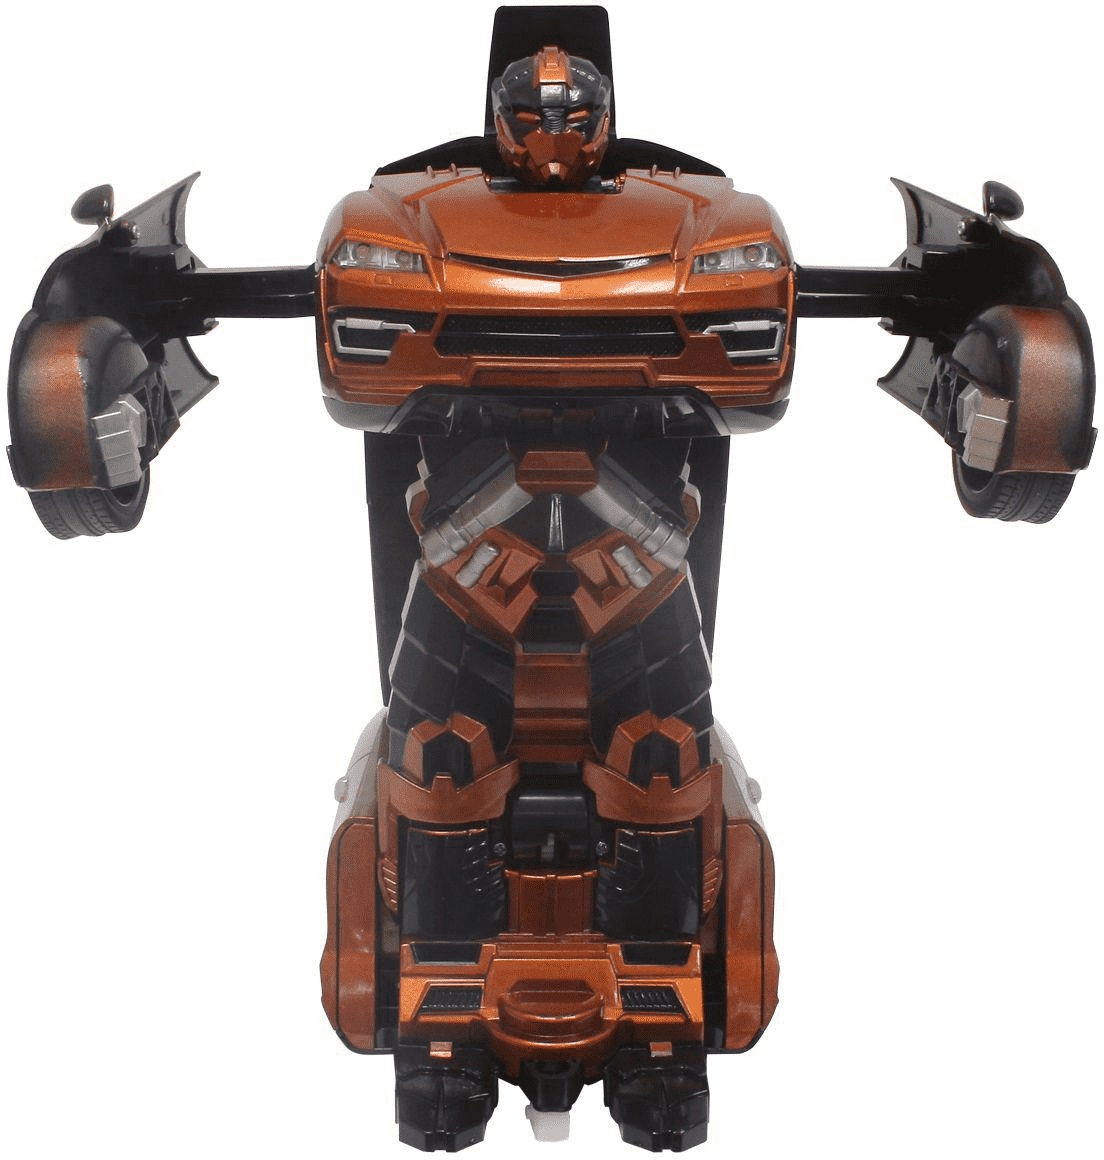 Робот на р/у трансформирующийся в машину, 30 см, оранжевый, 2,4 GHz  